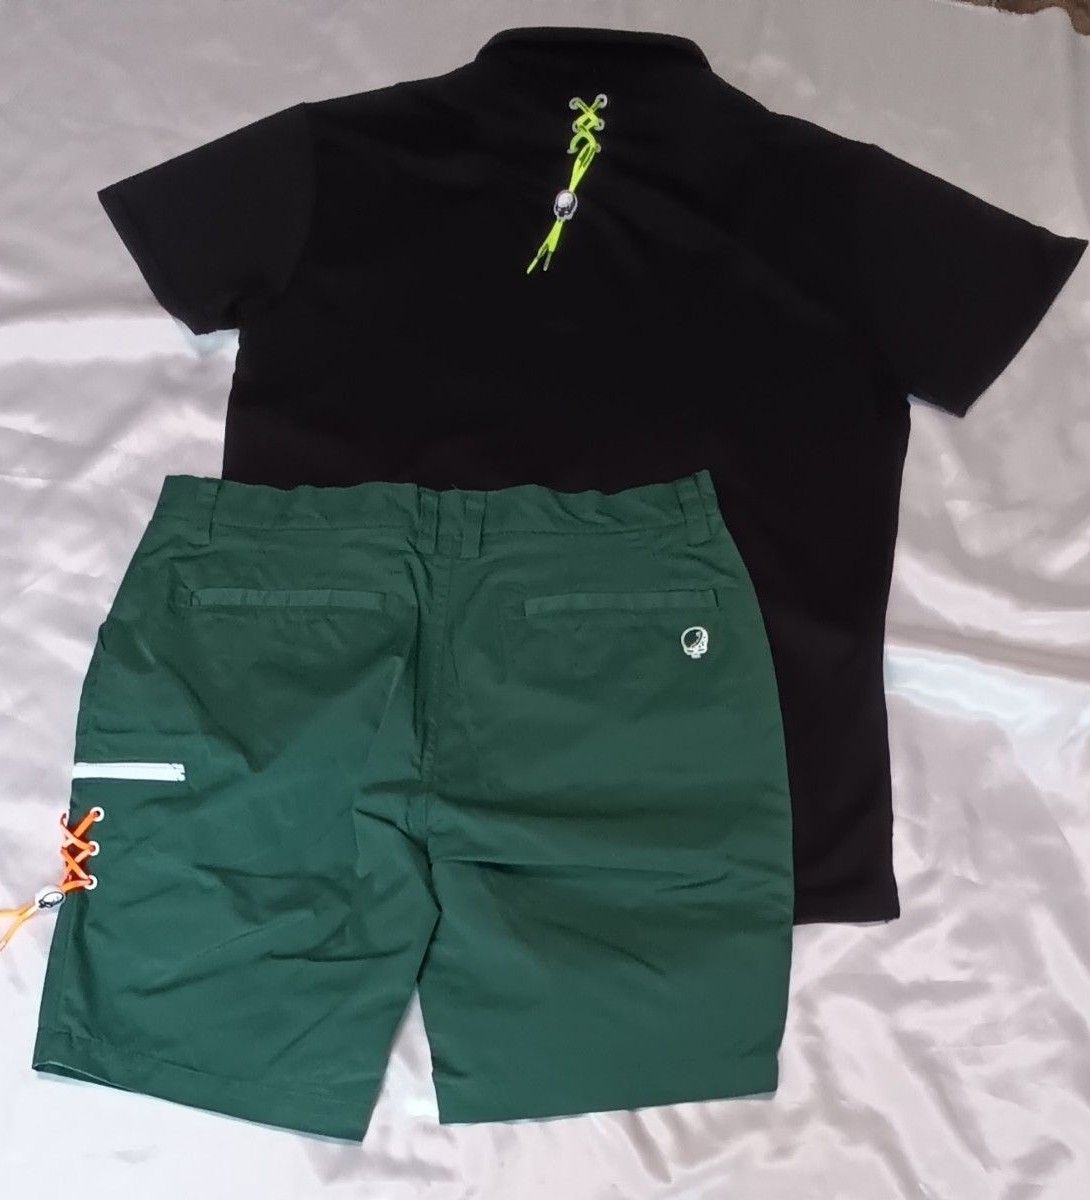 ラッセルノ ゴルフ メンズ  XL 6サイズ ポロシャツ ハーフパンツ セットアップ 上下 ブラック  グリーン  新品未使用